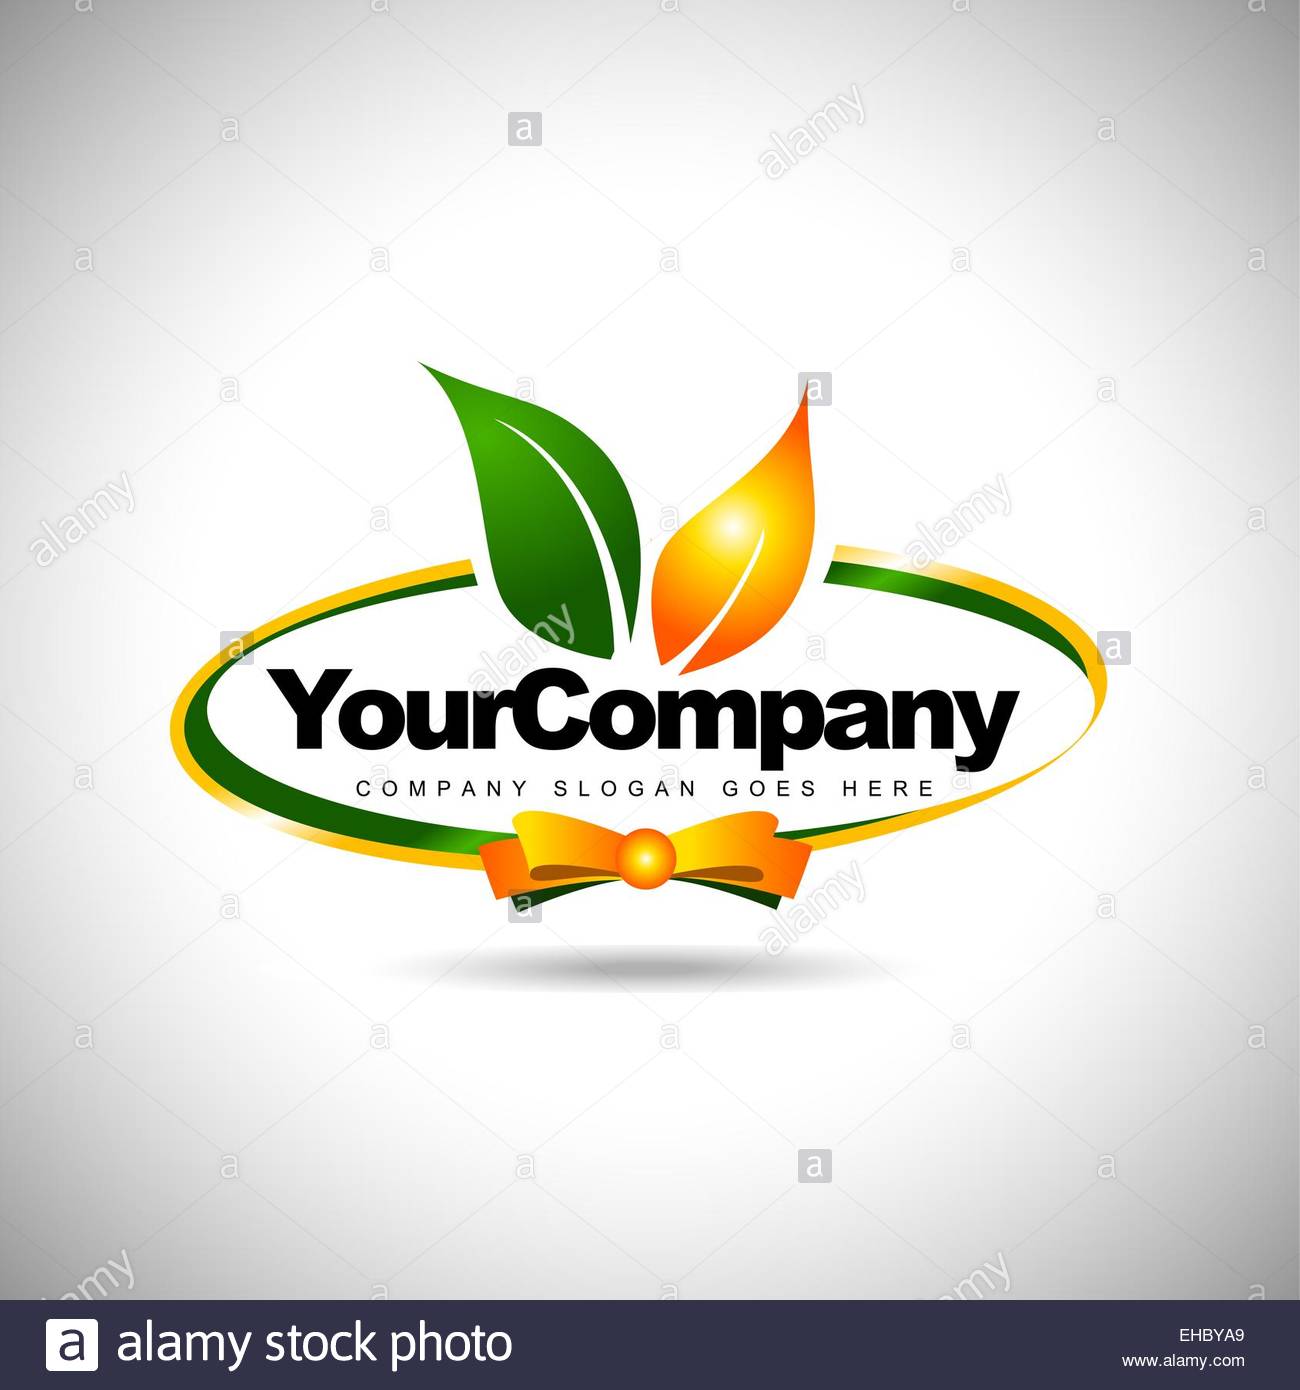 All Food Company Logo - Food company Logos